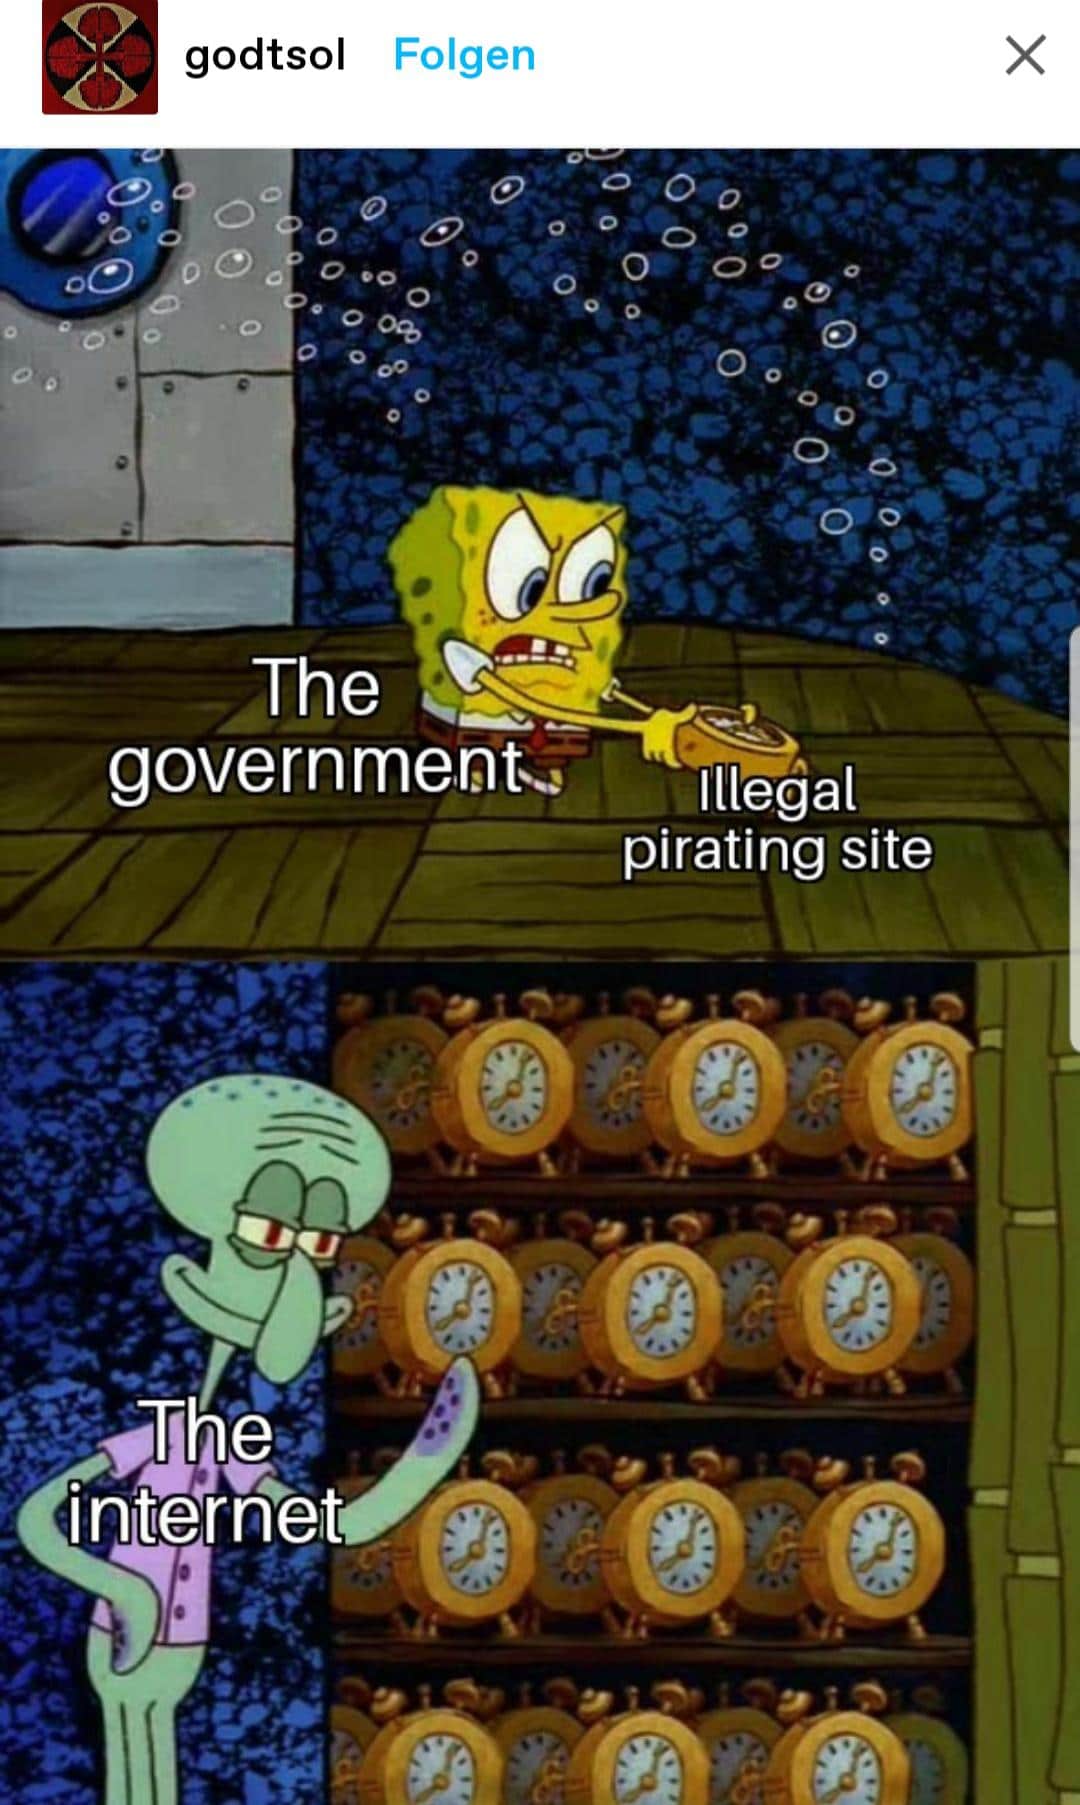 spongebob spongebob-memes spongebob text: godtsol Folgen OCO O The government.õ internet Illeóal pirating site 